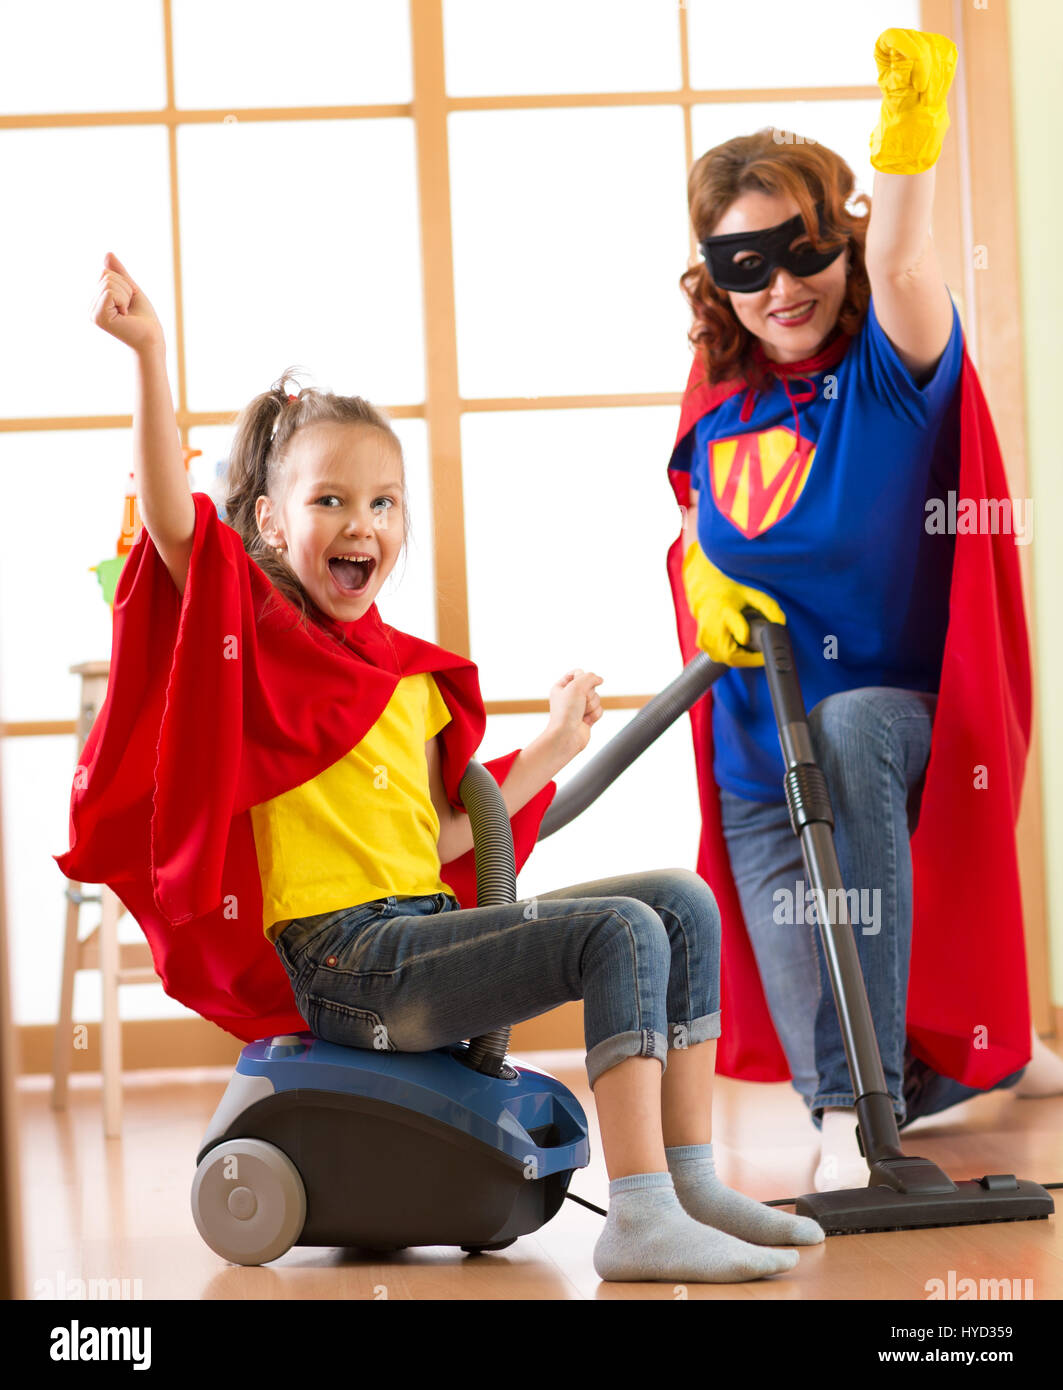 Kind und Mutter verkleidet als Superhelden mit Staubsauger im Zimmer. Familie - Tochter von Frau und Kind viel Spaß während der Reinigung des Bodens. Stockfoto